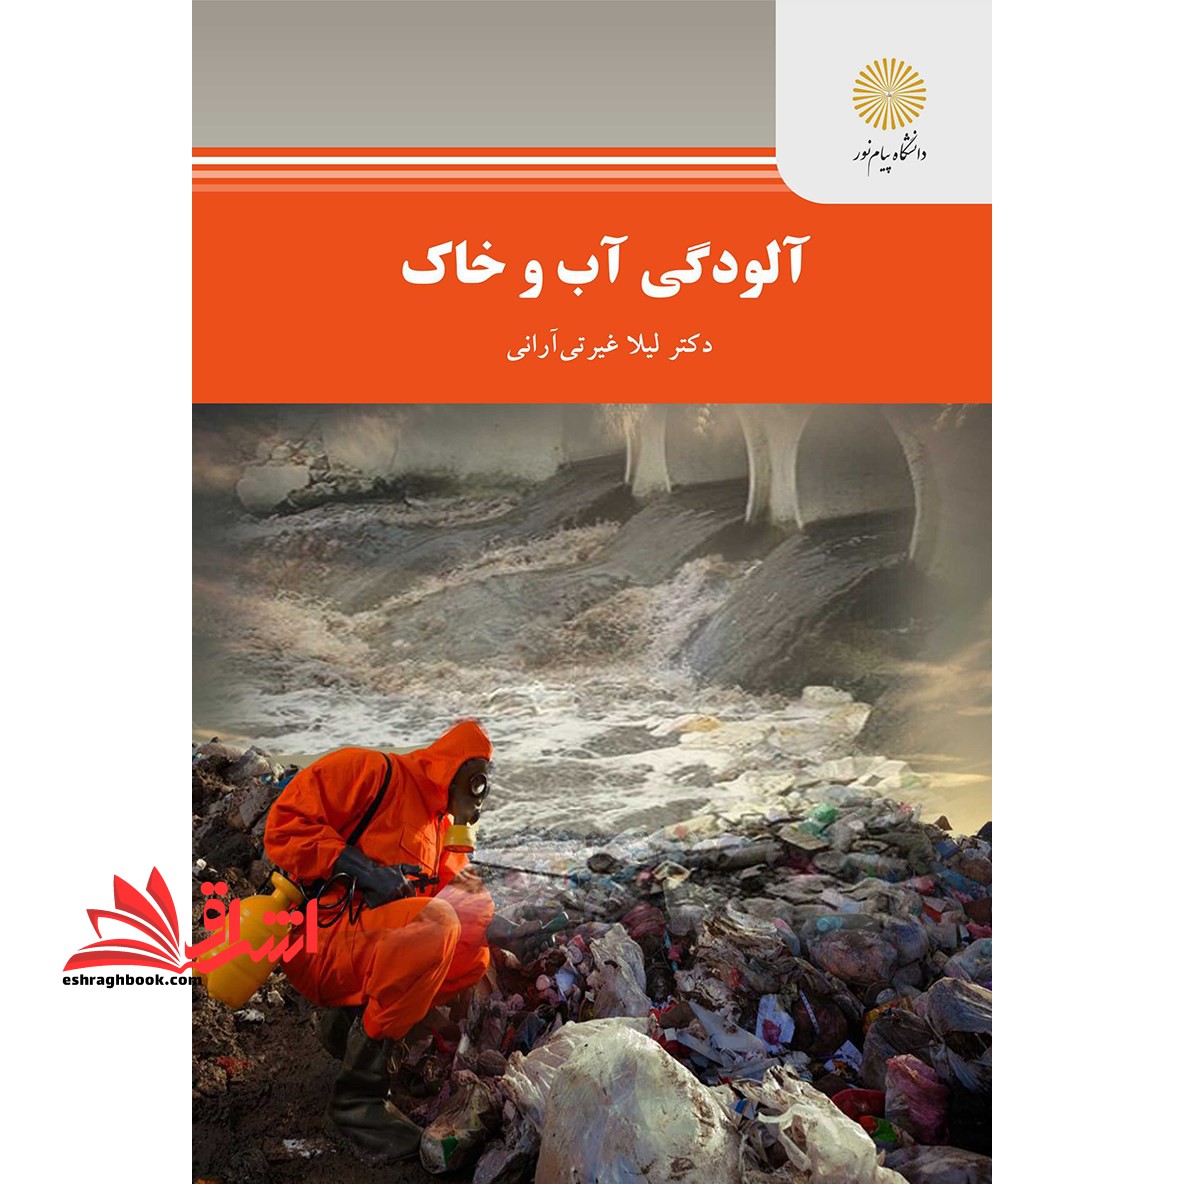 آلودگی آب و خاک؛ تهیه و تولید دفتر تدوین و تولید کتب و محتوای آموزشی